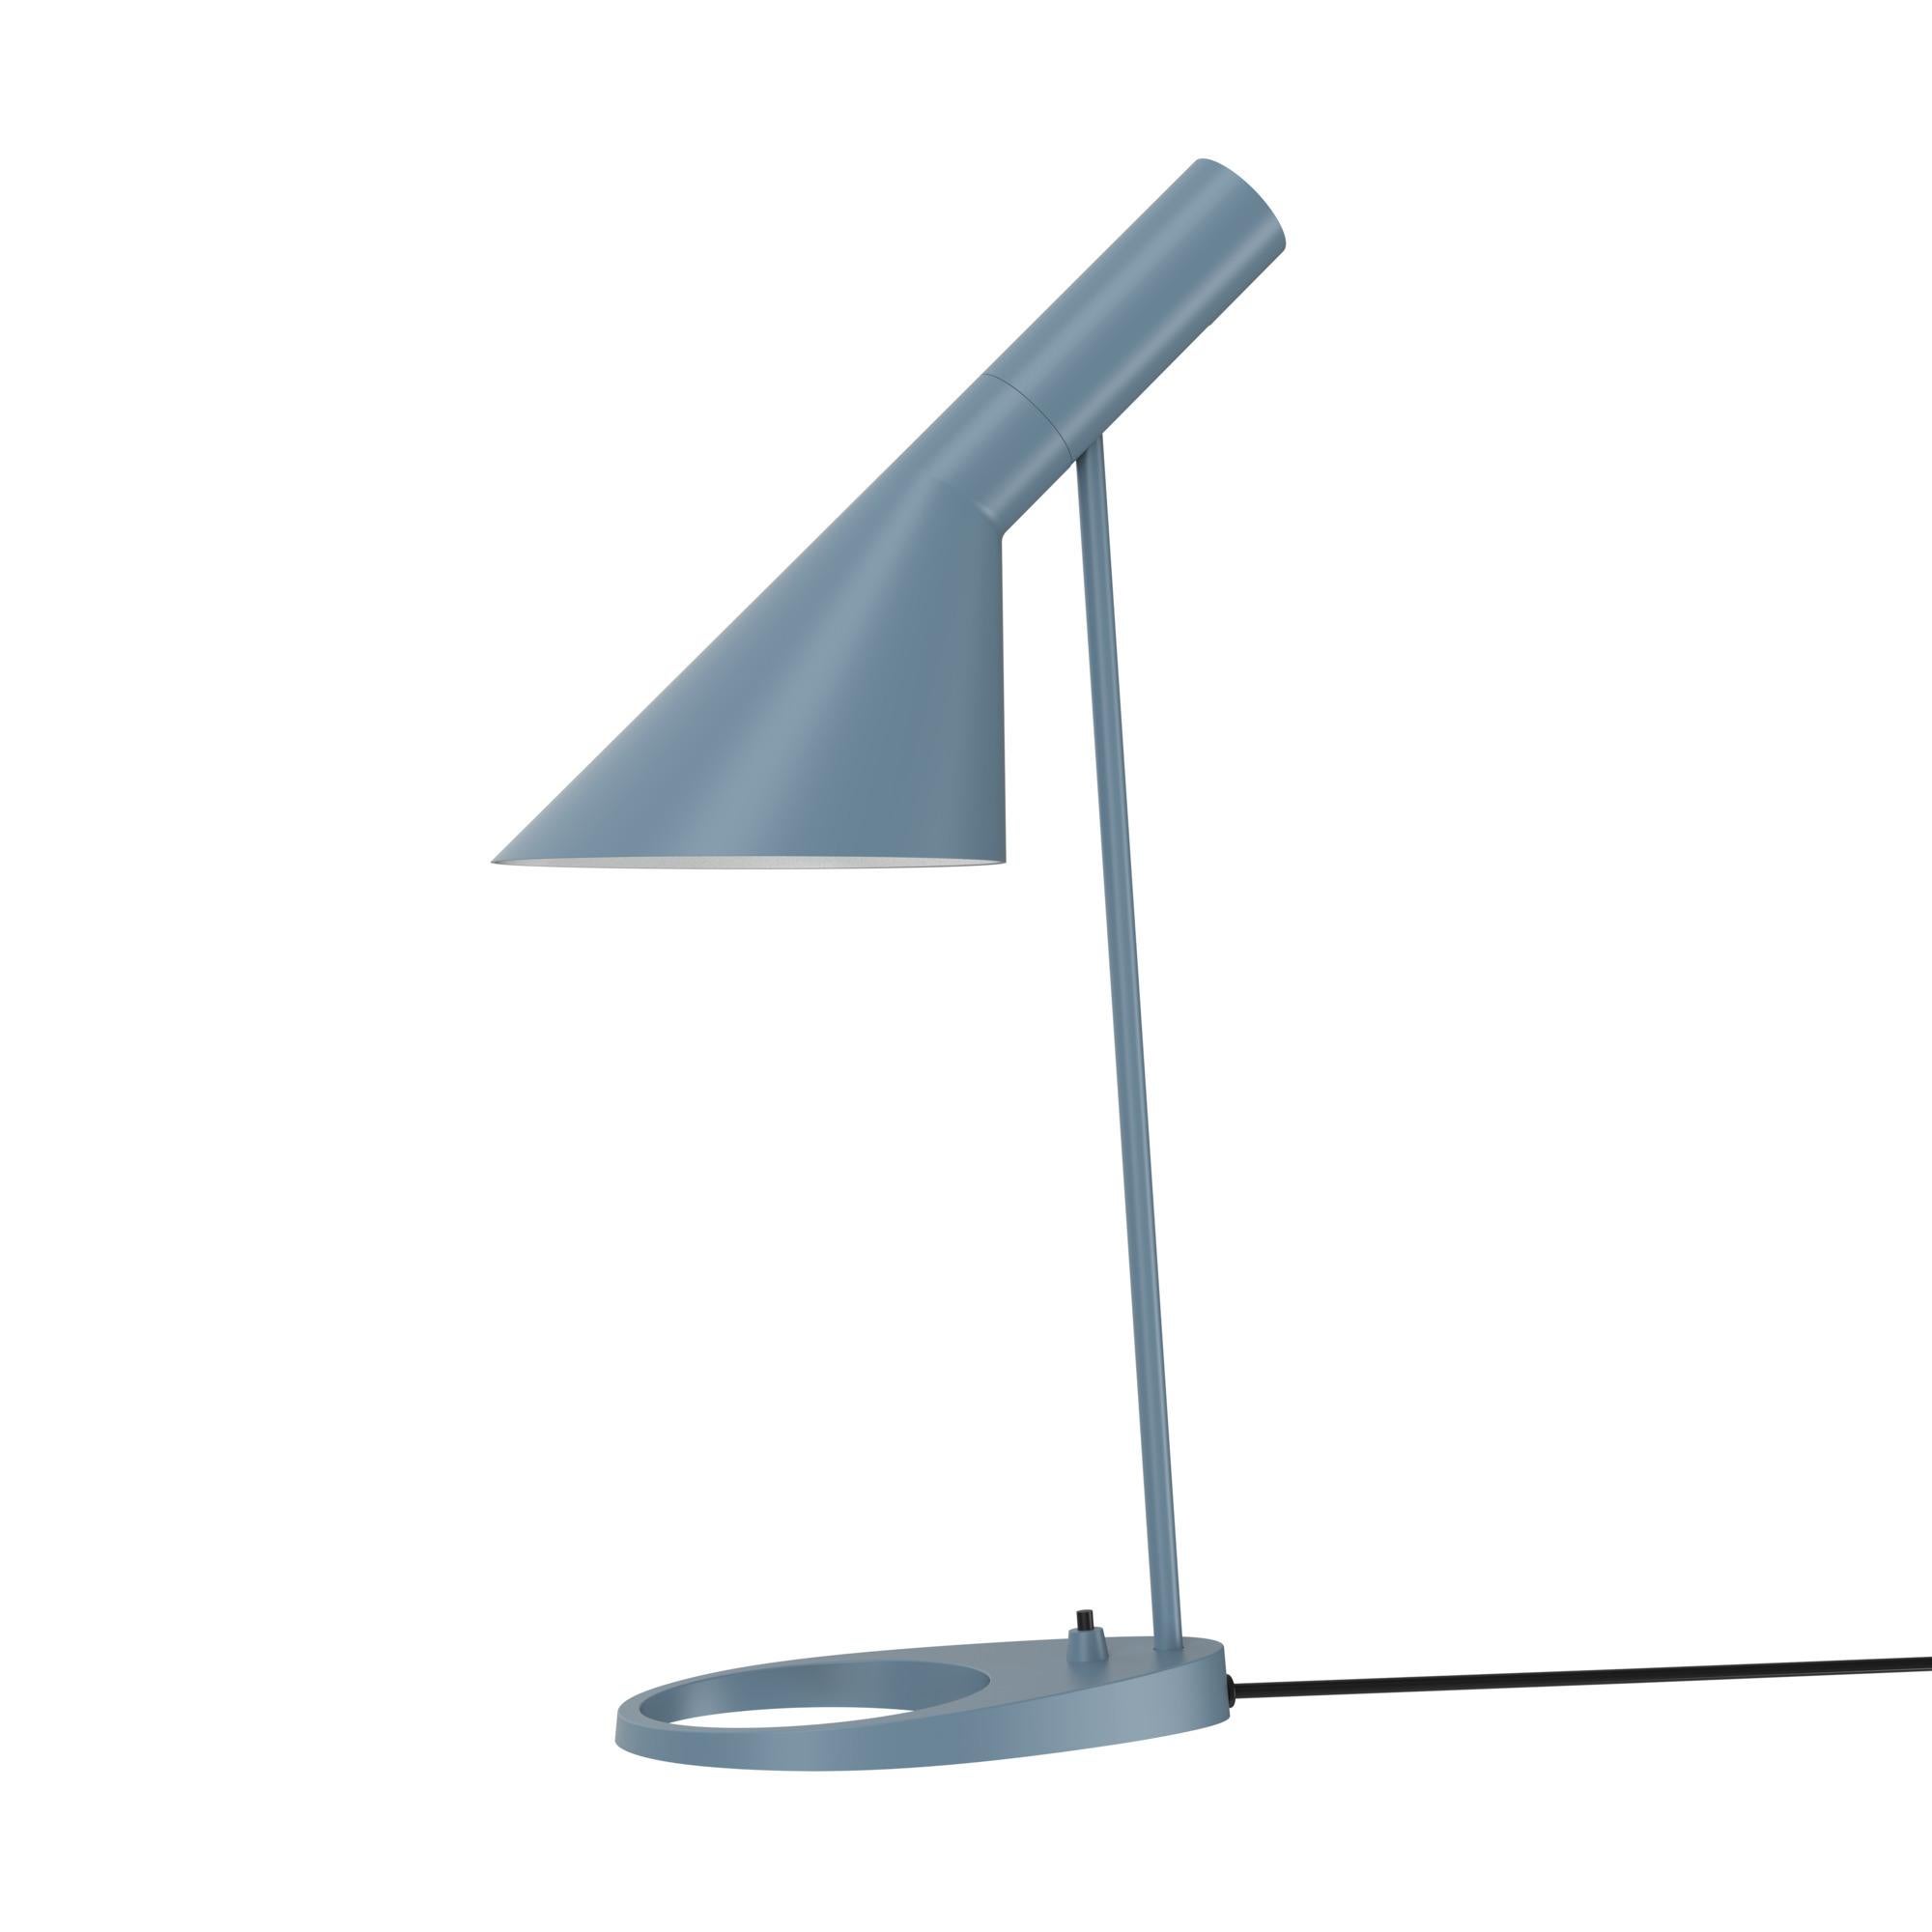 Arne Jacobsen AJ Table Lamp in Soft Lemon for Louis Poulsen For Sale 4